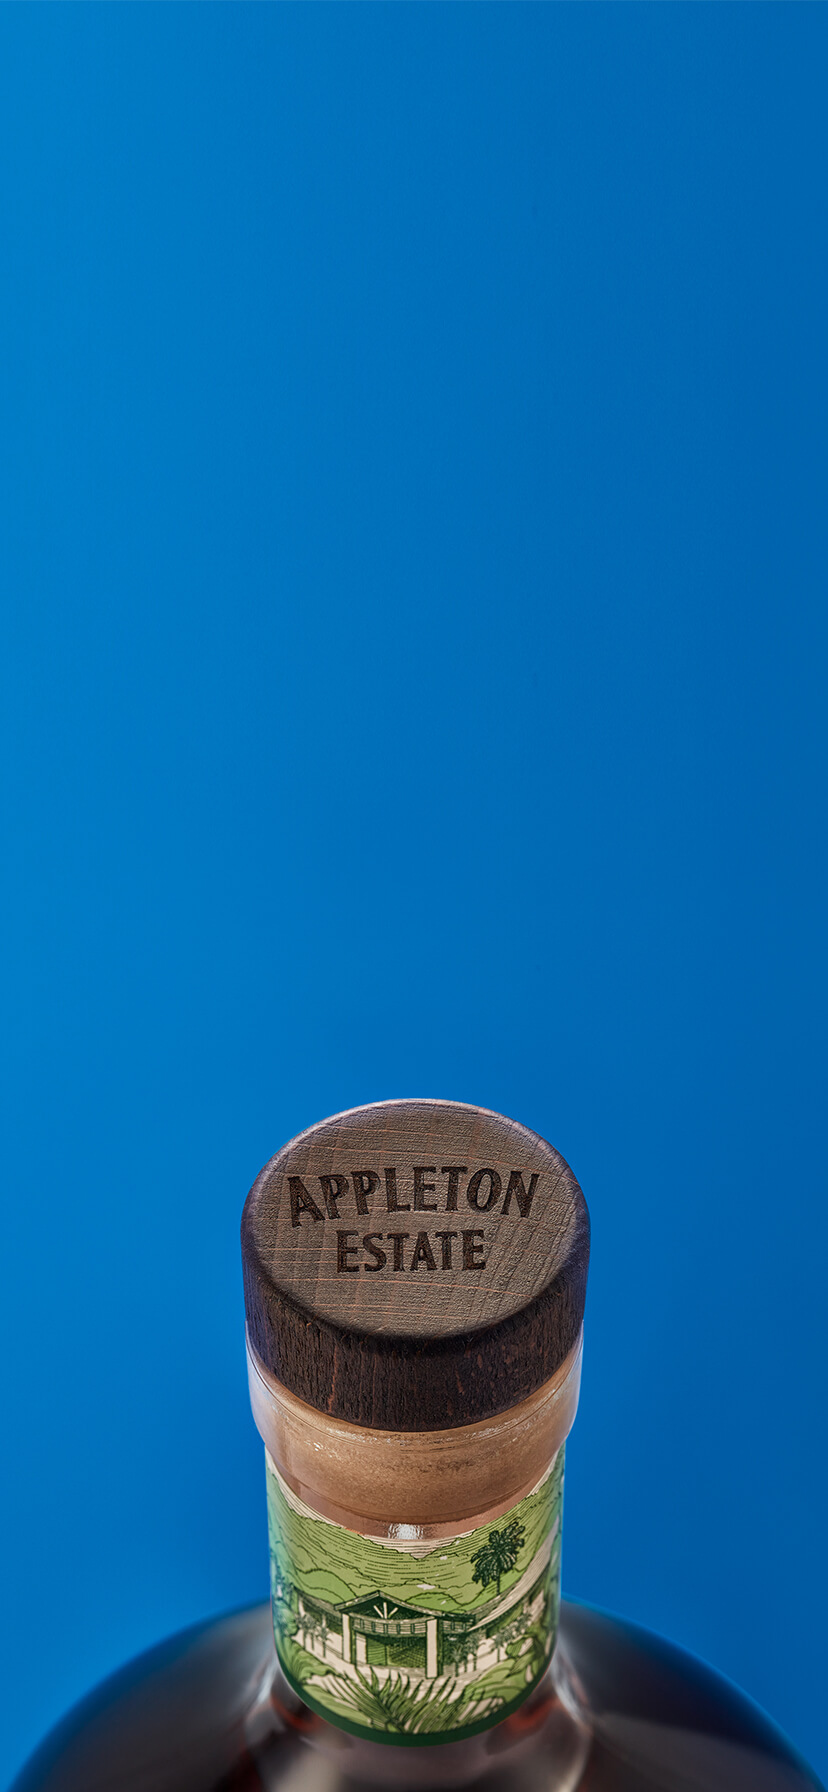 Appleton Estate Signature : Profil aromatique